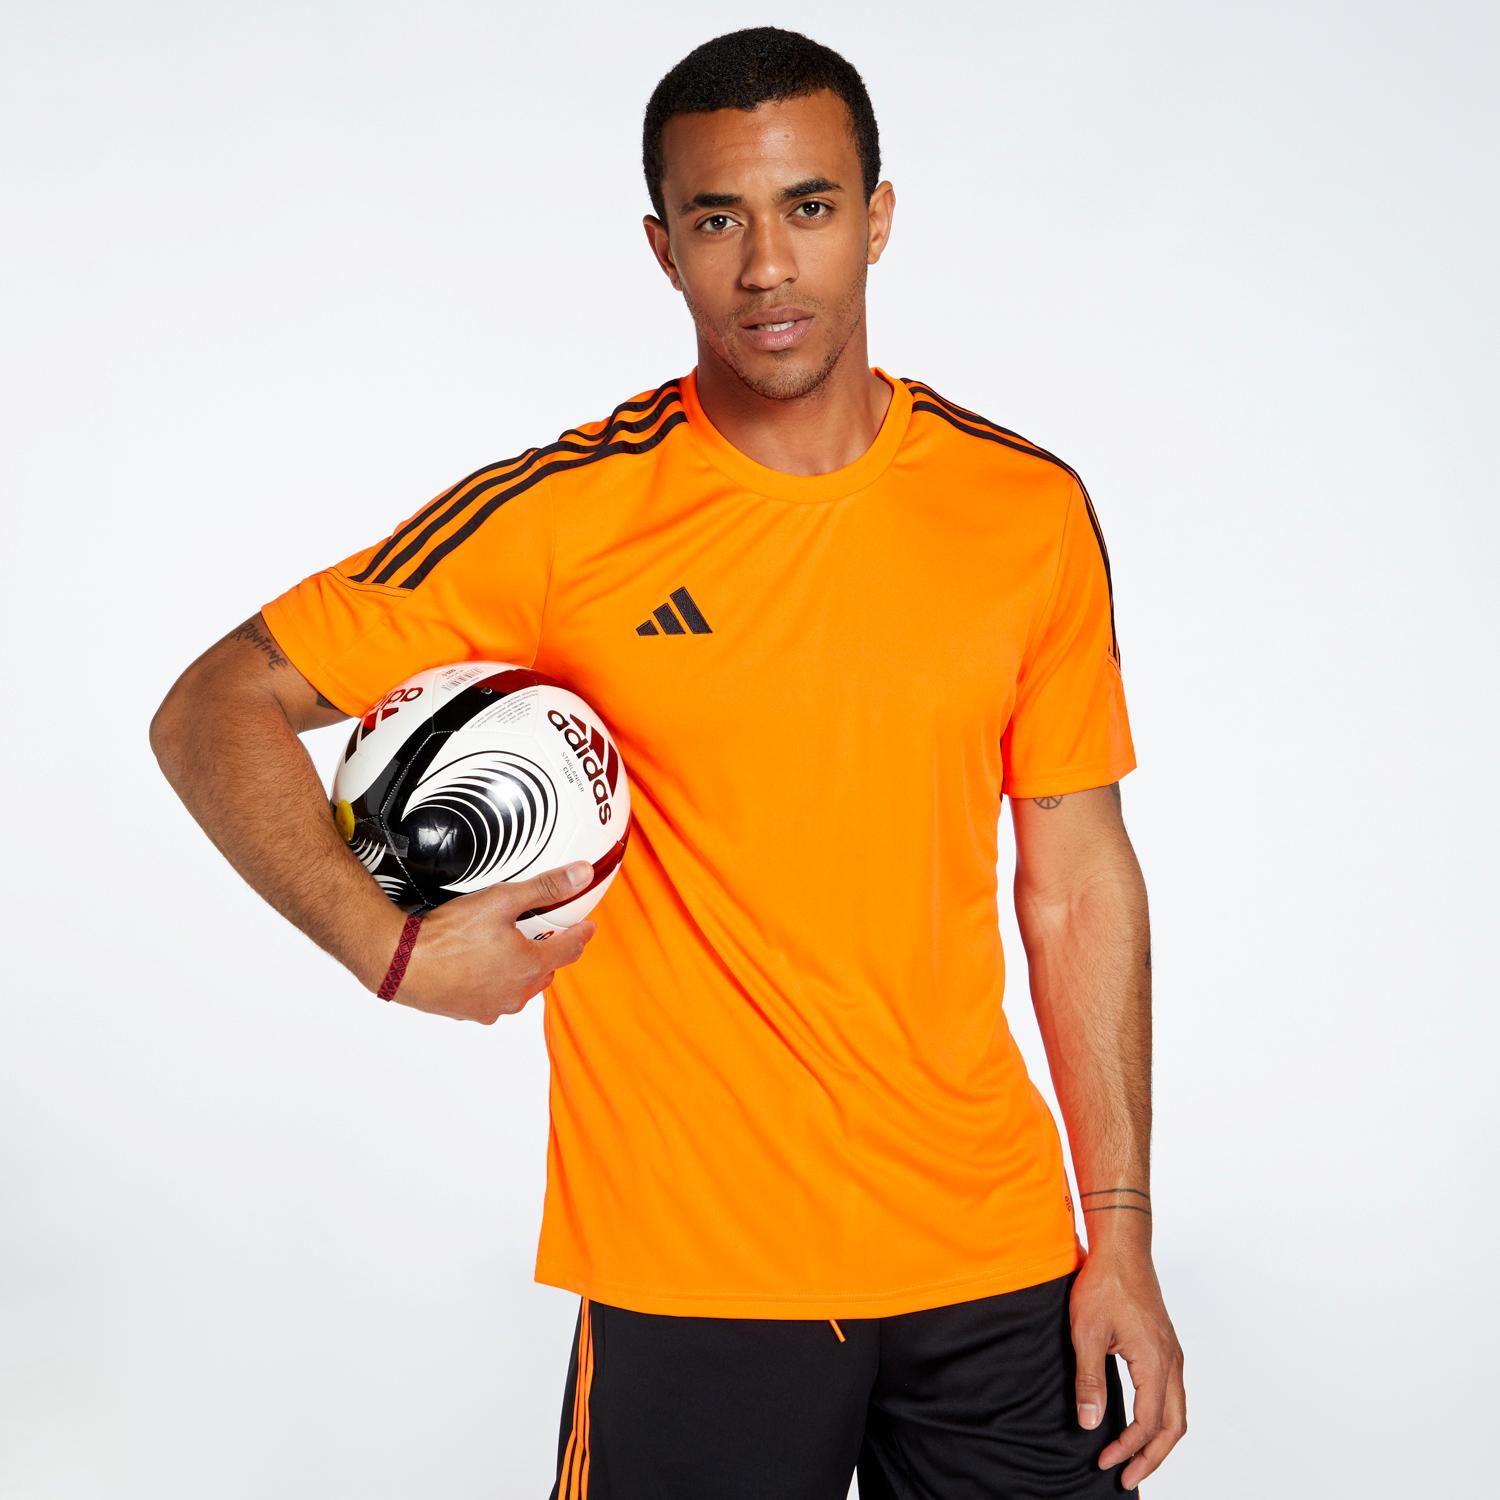 Asesor Volver a disparar Anual Camisetas de futbol color naranja | Sprinter